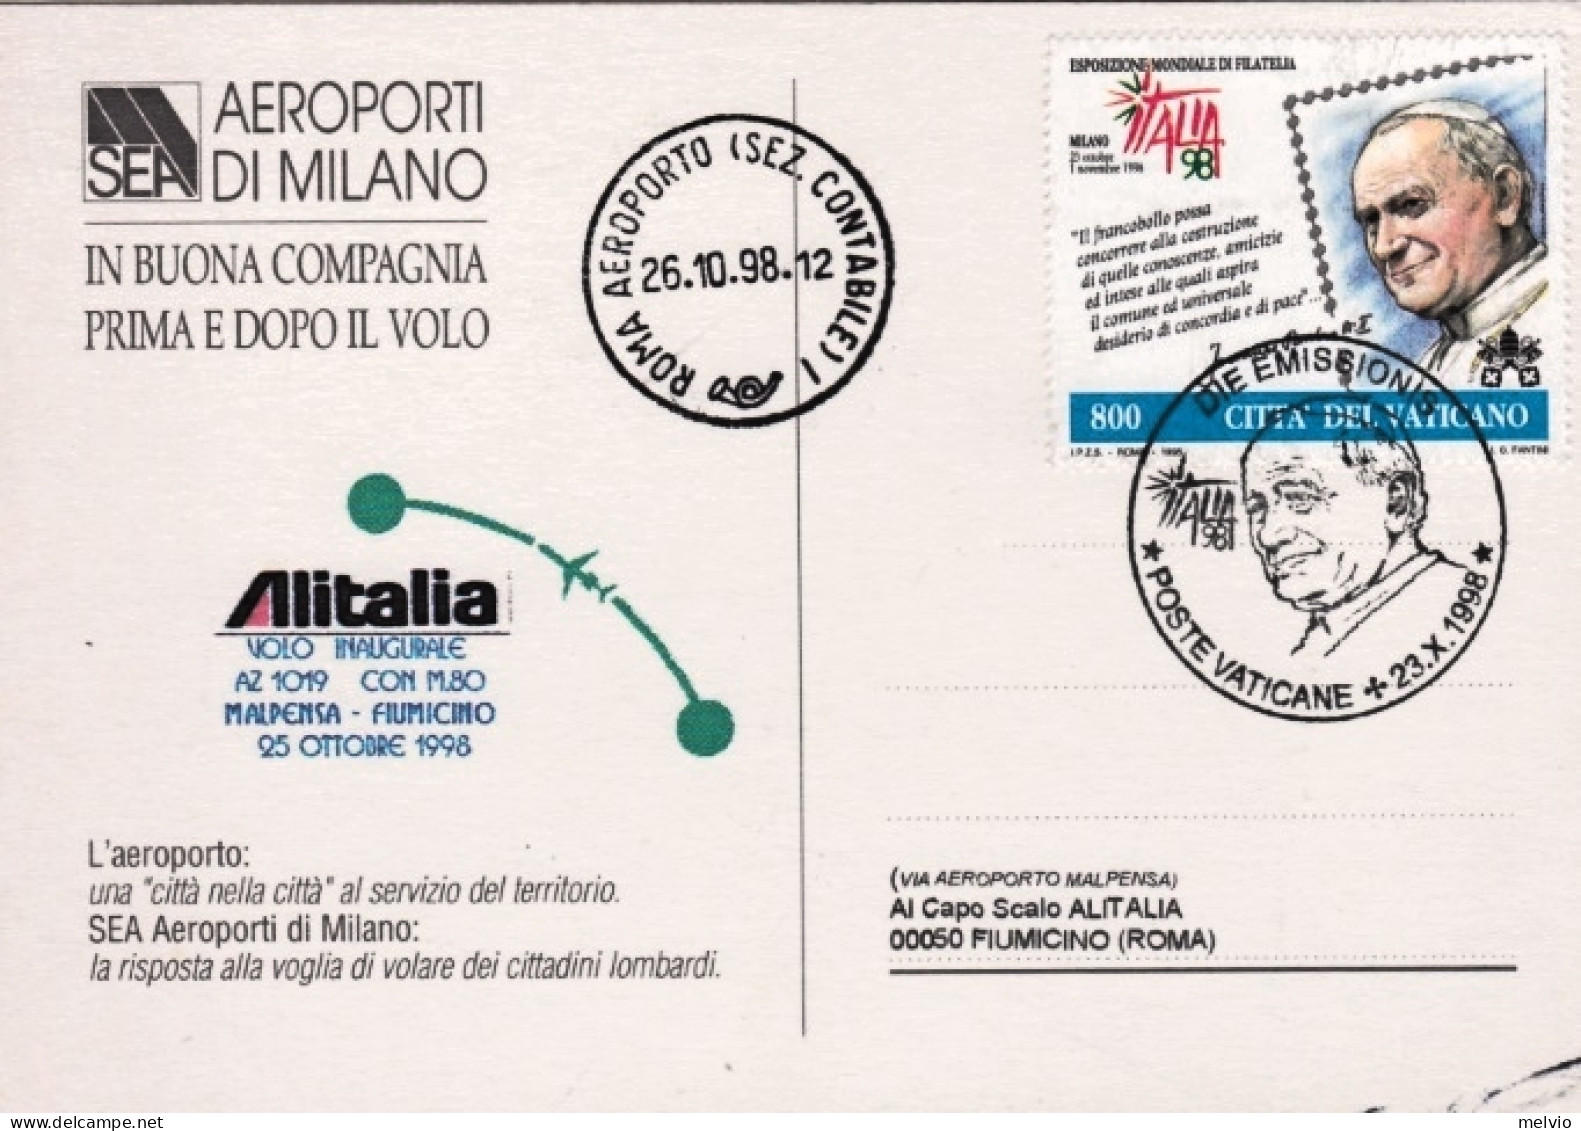 Vaticano-1998 I^volo Alitalia AZ1019 Malpensa Fiumicino Del 25 Ottobre - Aéreo